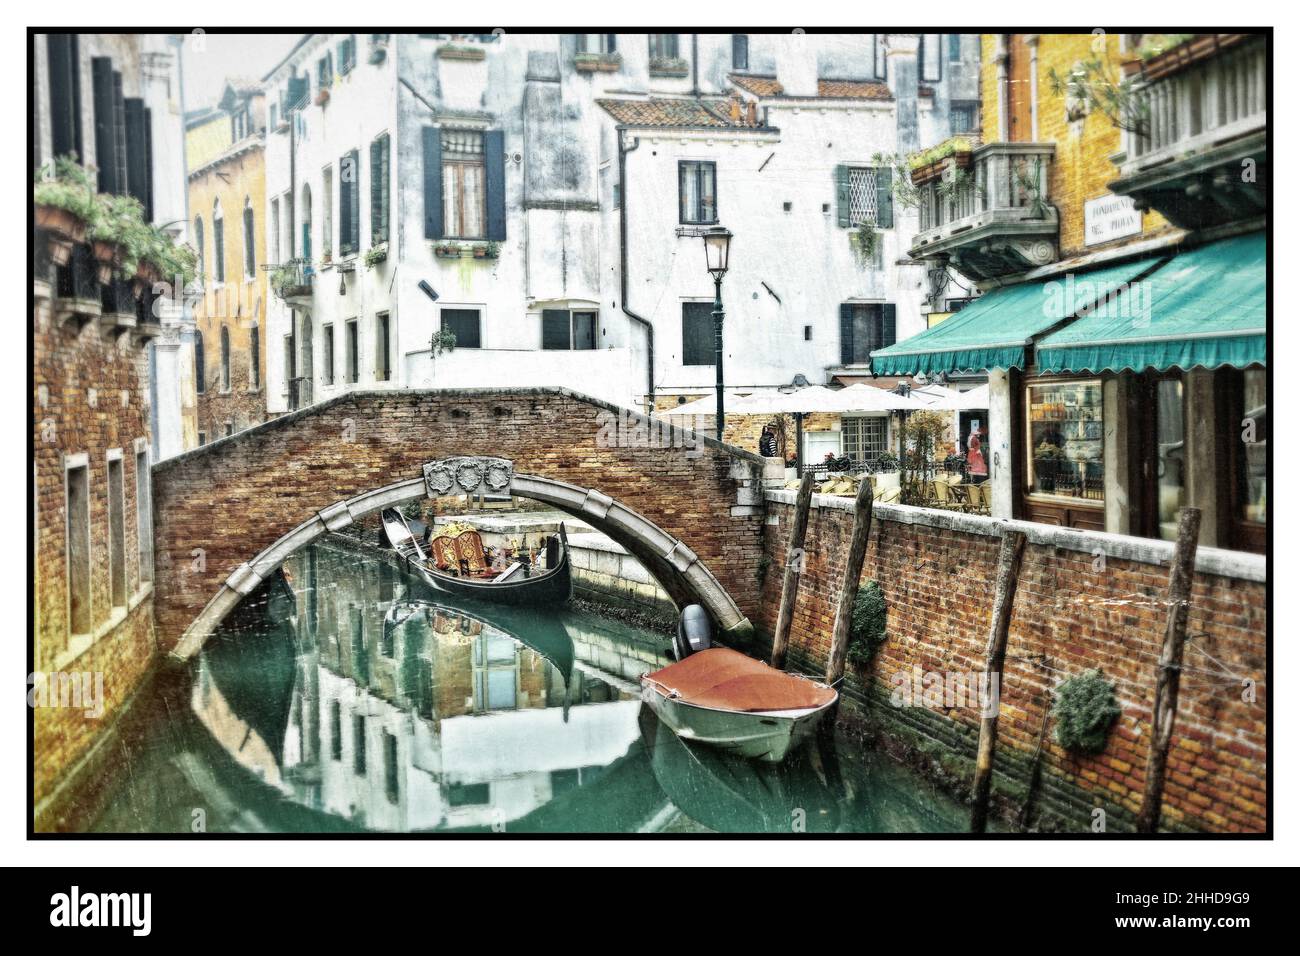 Romantici canali veneziani. Antiche stradine di Venezia. Gondole e ponti. Foto in stile retrò. Italia Foto Stock